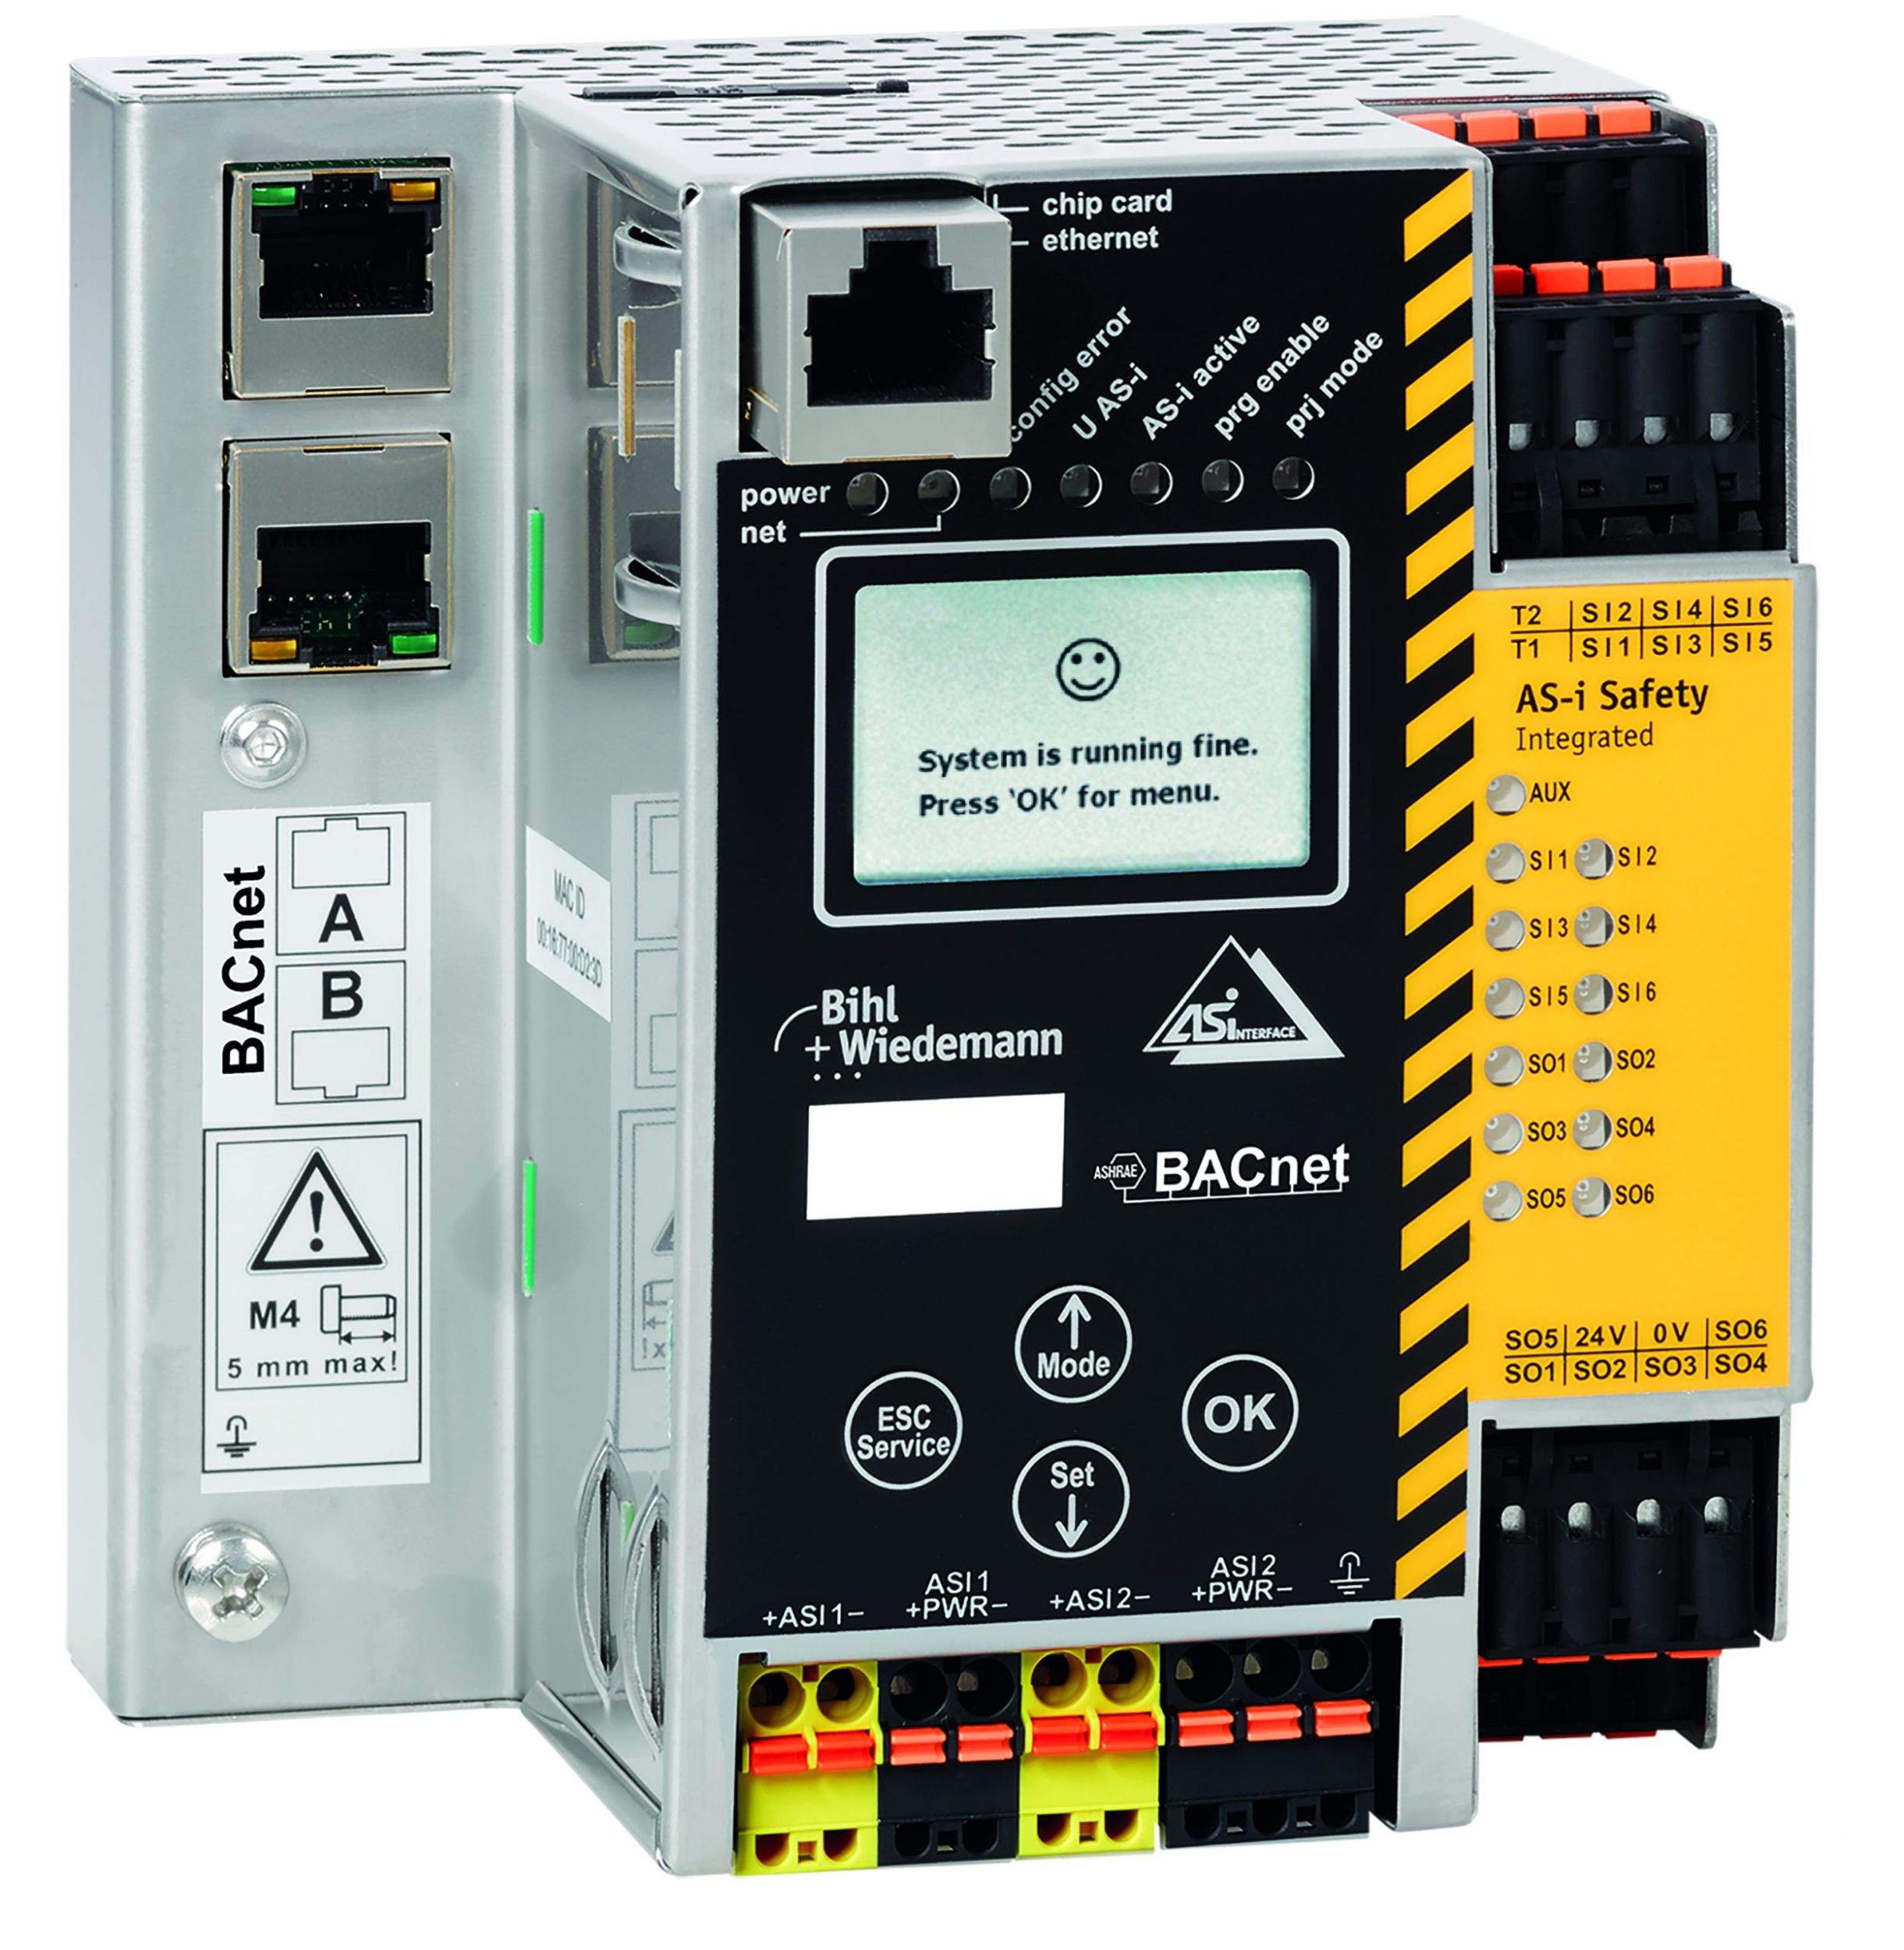 ASi-BACnet/IP-Controller mit integrierter Sicherheitseinheit